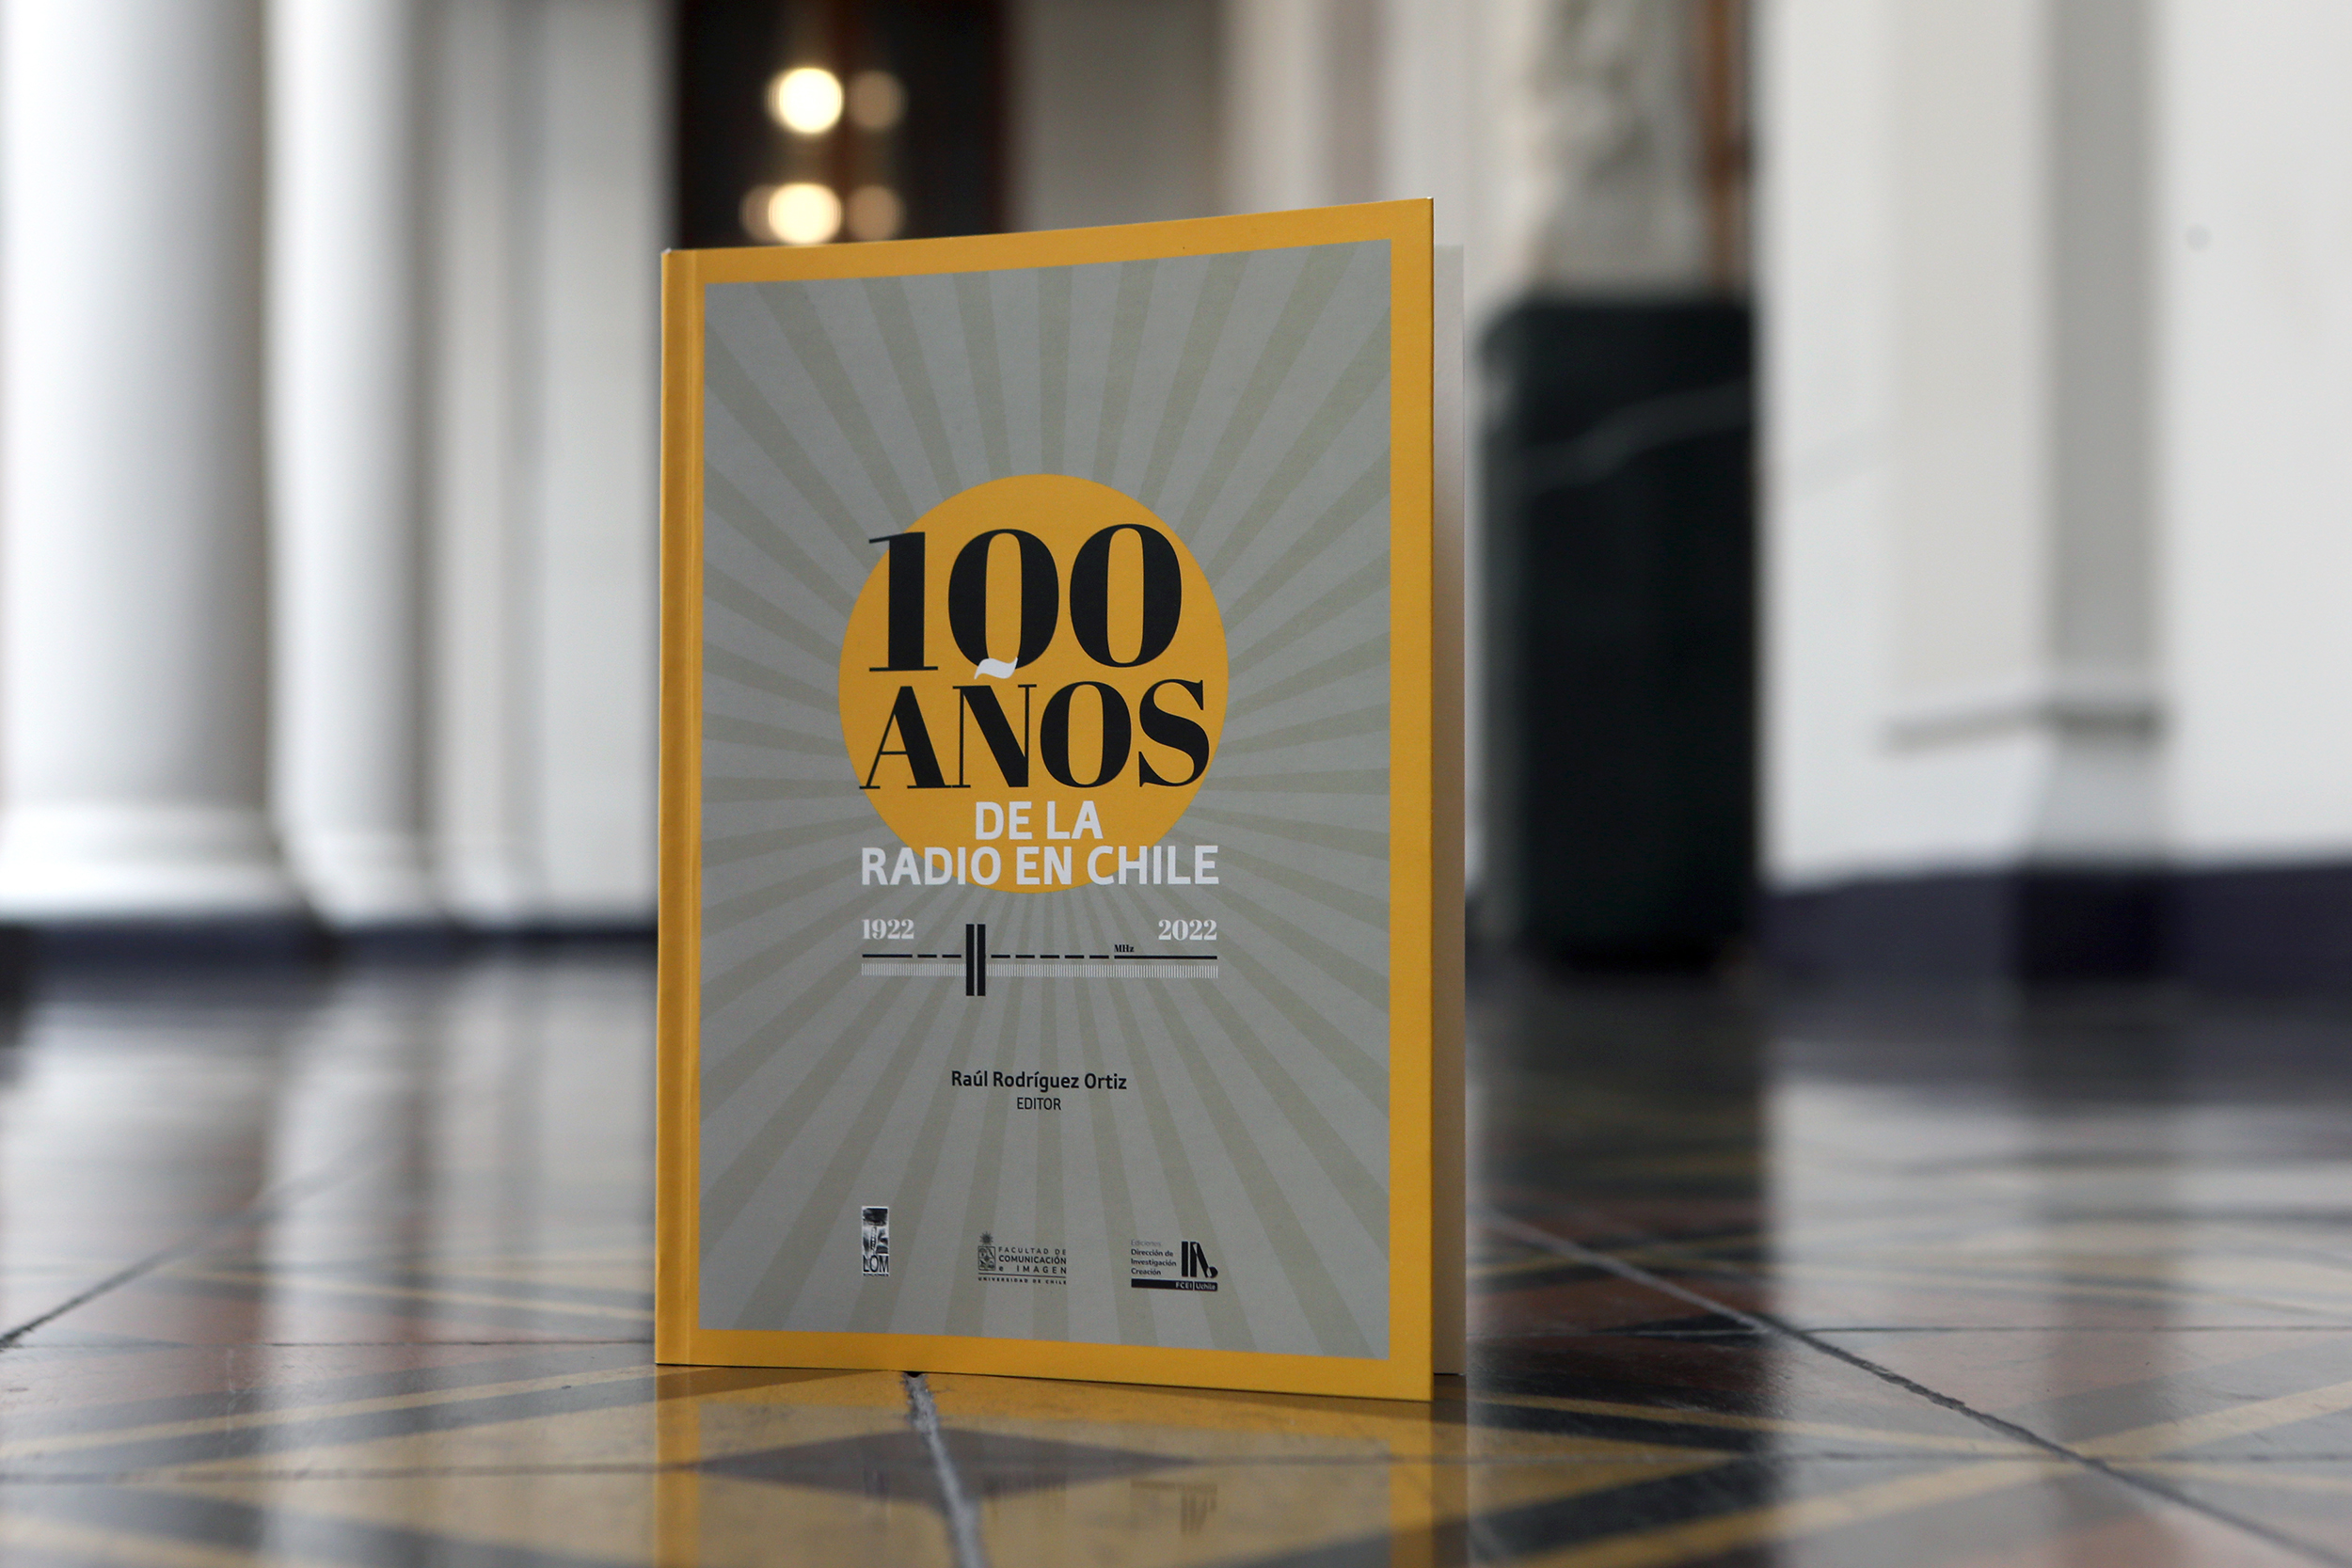  Cien años de la radiodifusión: U. de Chile celebra la primera transmisión con libro y sitio patrimonial